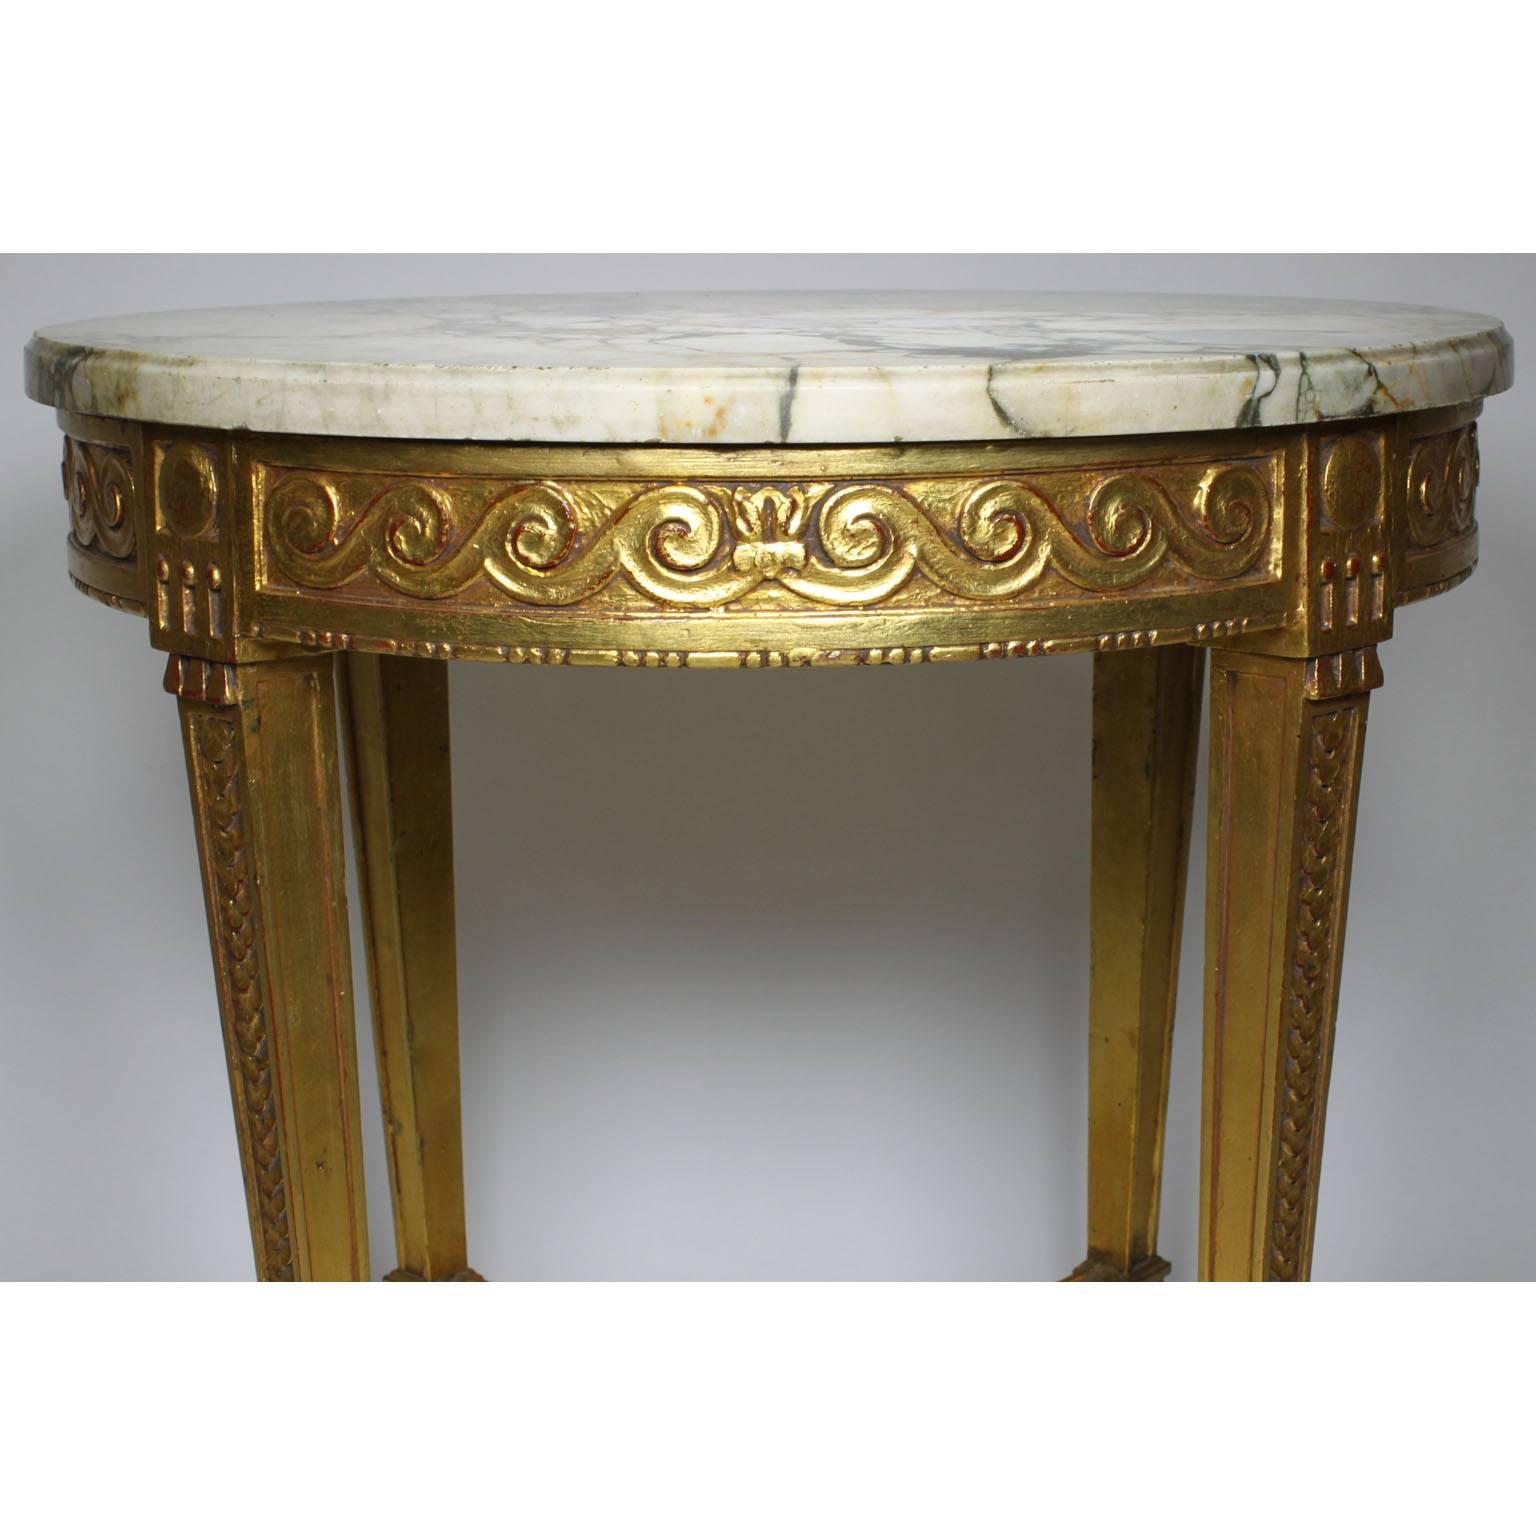 Ein französischer Guéridon-Tisch im Stil Louis XV aus geschnitztem Goldholz mit Marmorplatte. Runder Rahmen aus vergoldetem Holz, geschnitzt, mit vier geschwungenen Kabriolettbeinen, die mit einer Bahre mit kreisförmigem Mittelpunkt verbunden sind,